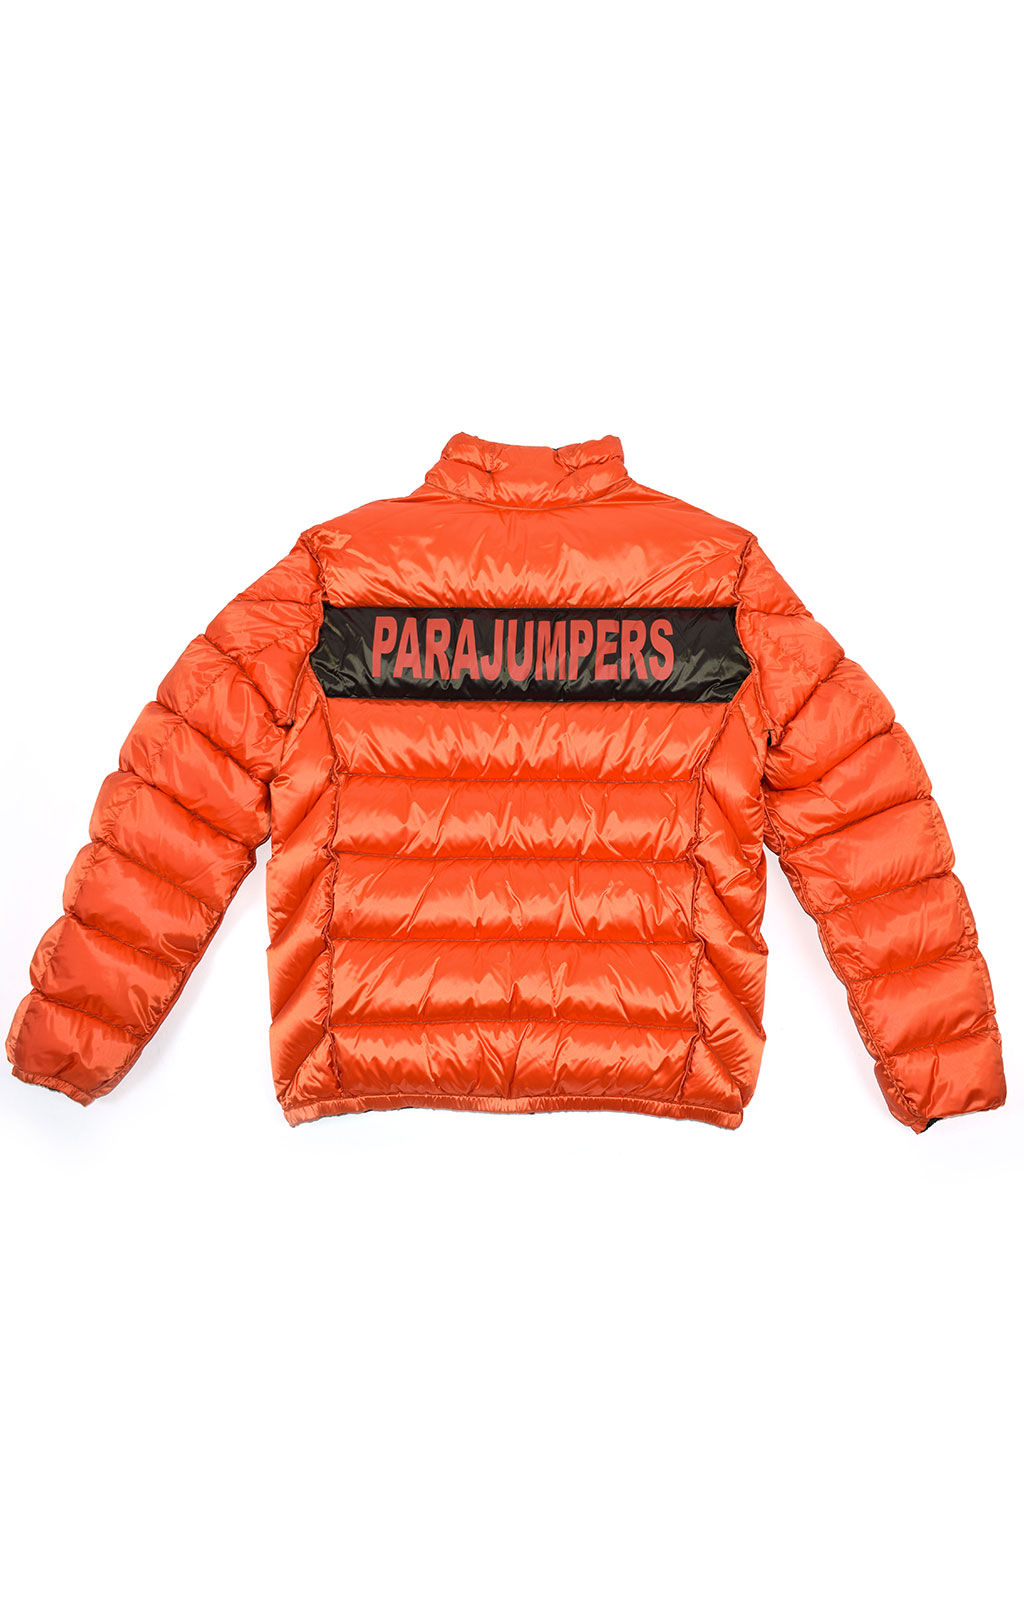 Куртка-пуховик PARAJUMPERS JACKSON REVERSO FW 20/21 sycamore/carrot 